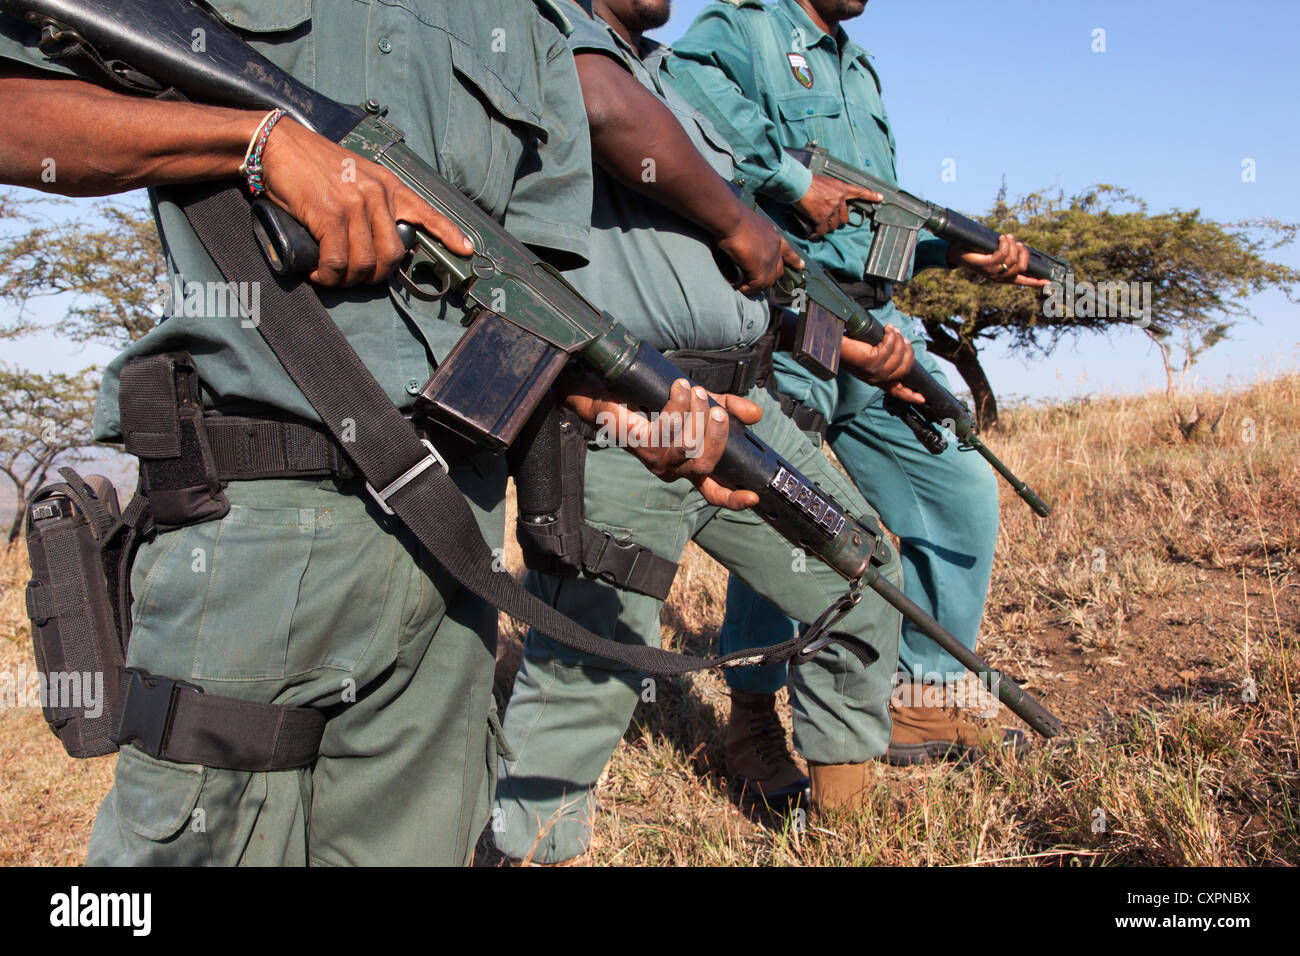 Anti-caccia di frodo unità, Ezemvelo KZN Wildlife, iMfolozi Game Reserve, Sud Africa, Foto Stock